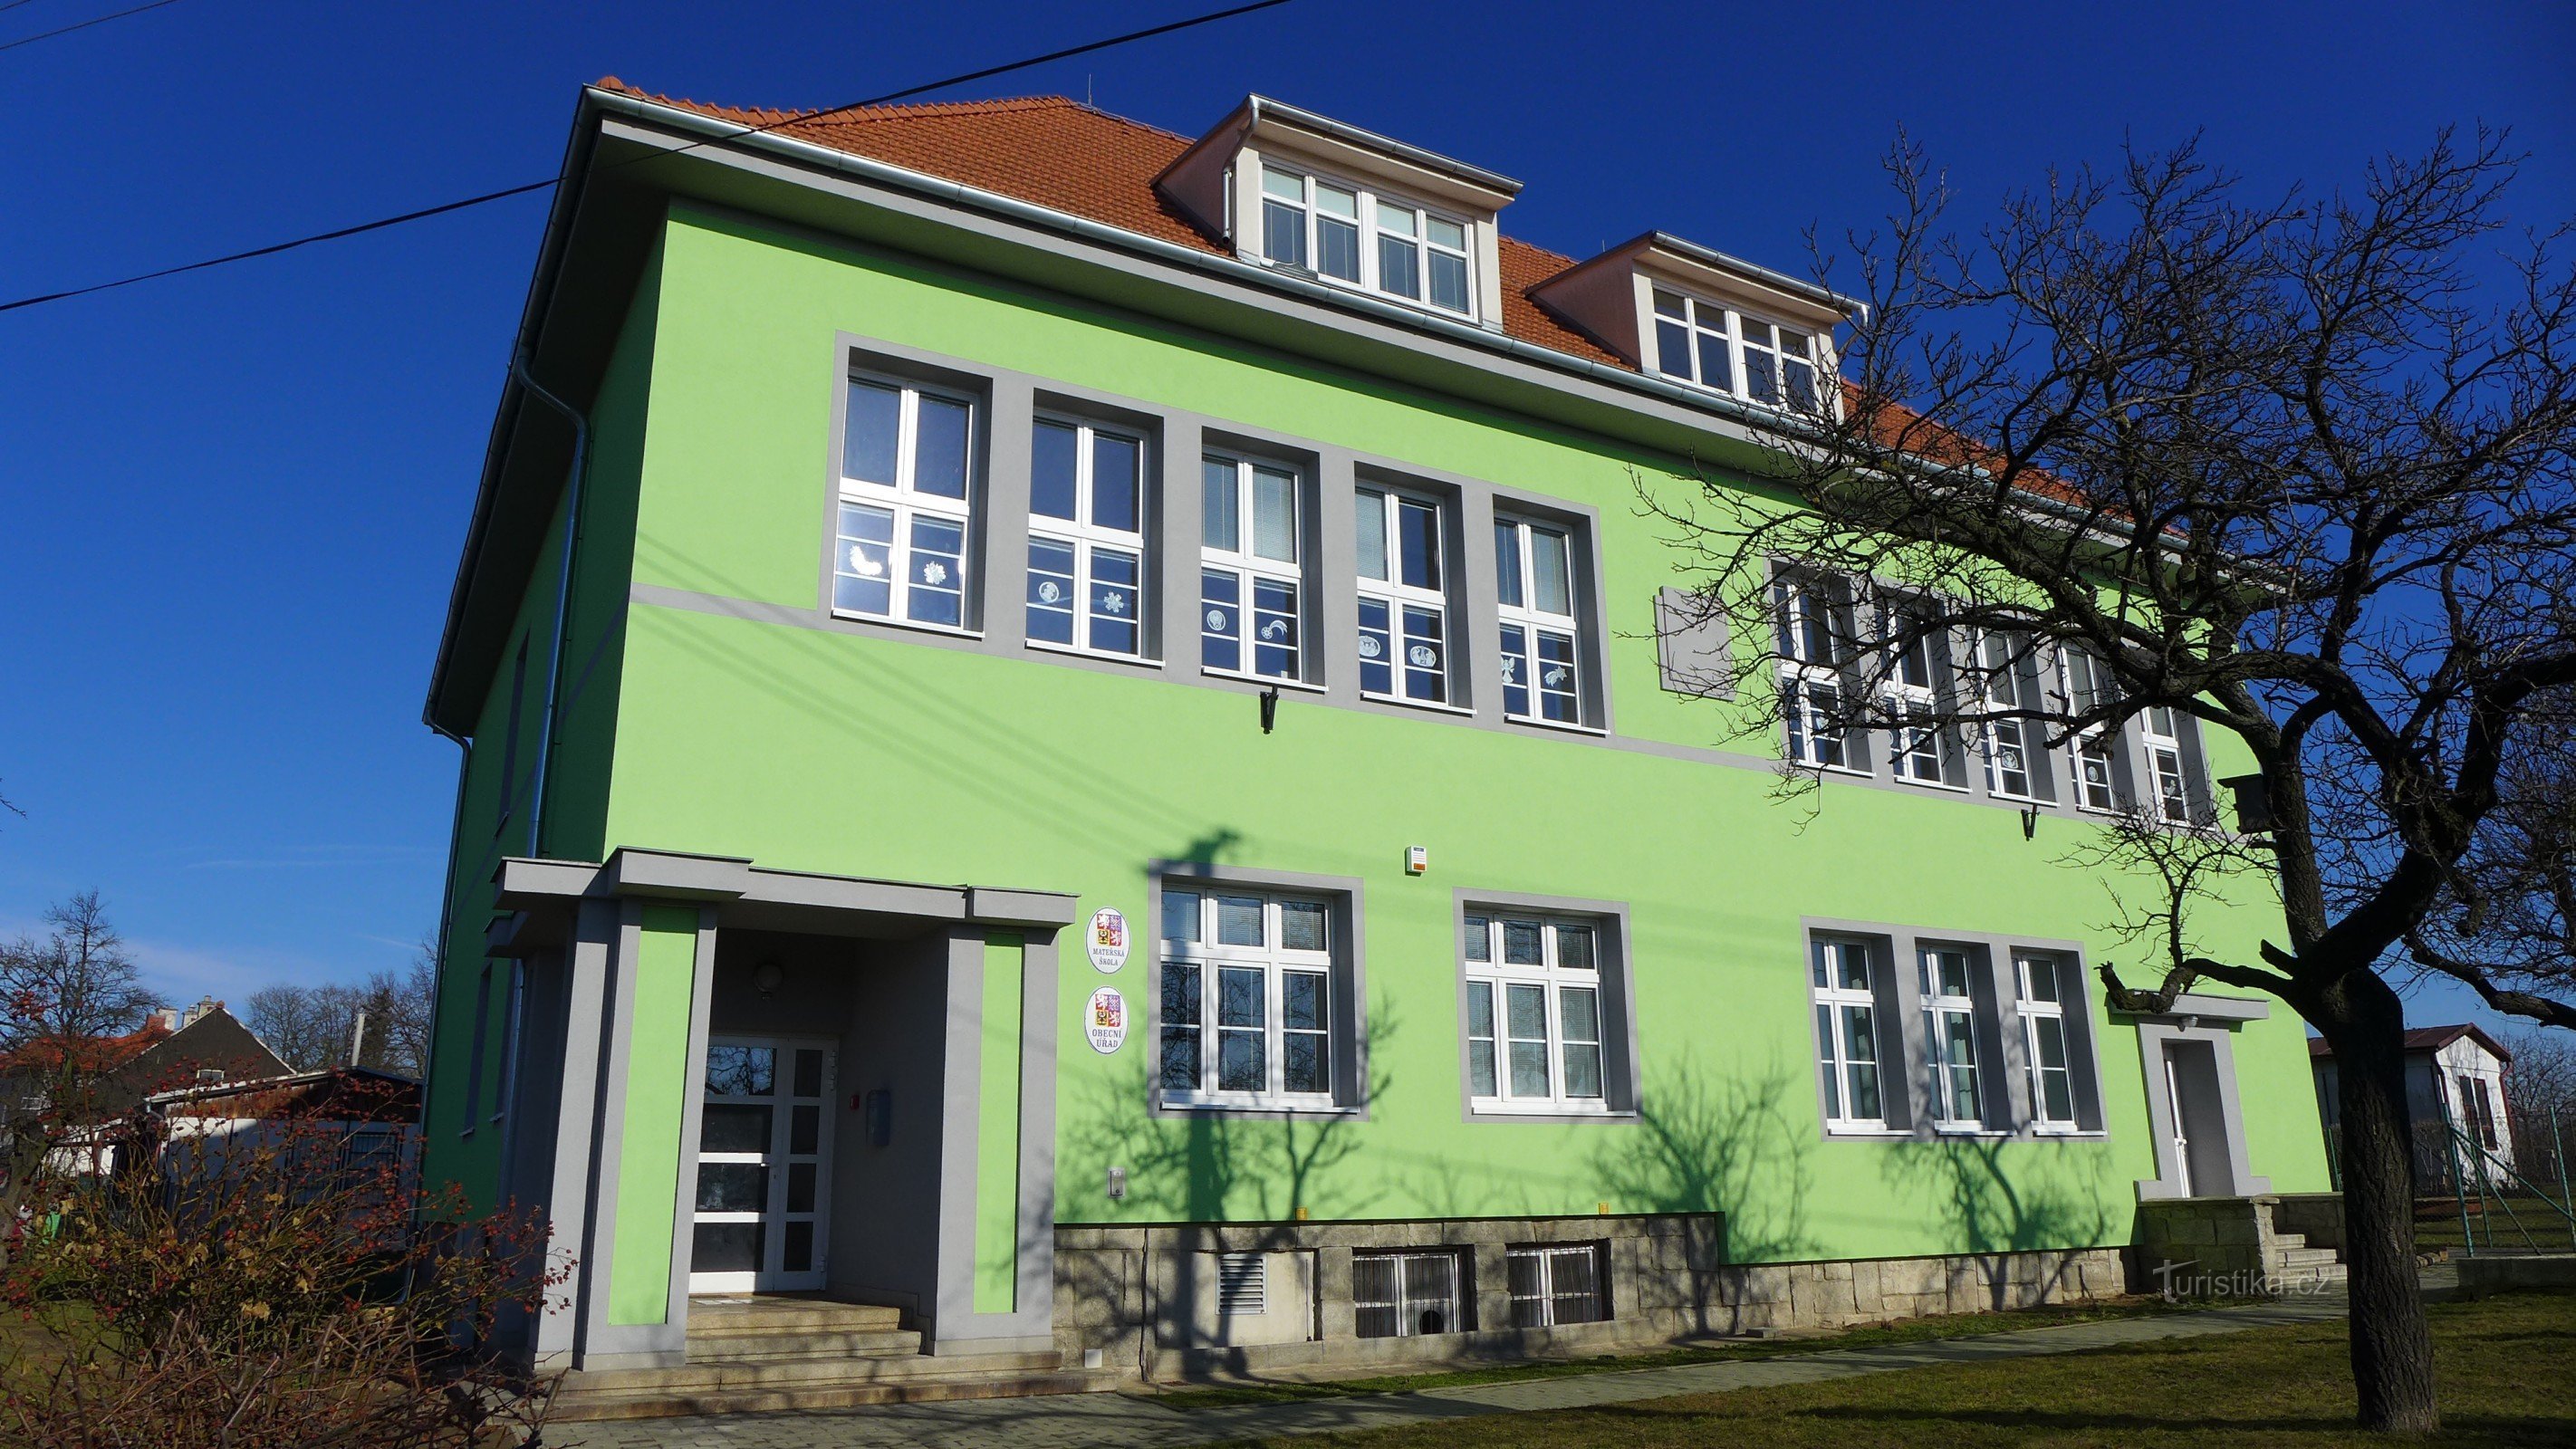 Suchohrdly - ufficio comunale e scuola materna